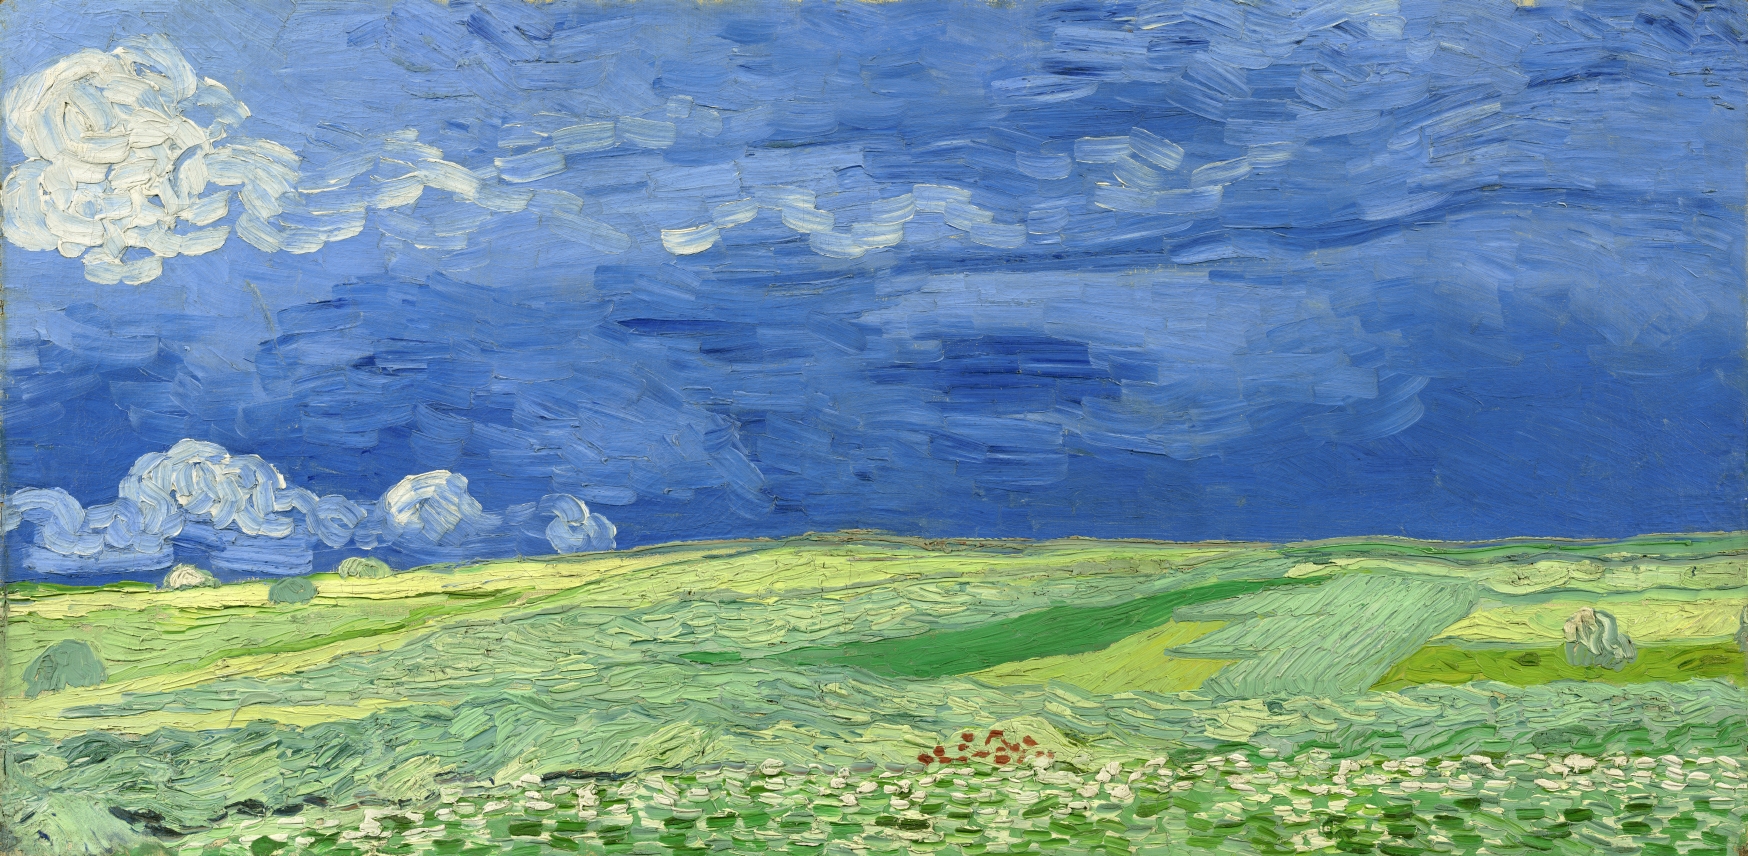 Vincent van Gogh (1853-1890), Champ de blé sous des nuages d’orage, 1890. Huile sur toile, 50,4 x 101,3 cm. Amsterdam, Van Gogh Museum (Vincent van Gogh Foundation). Photo service de presse. © Van Gogh Museum, Amsterdam (Vincent van Gogh Foundation)